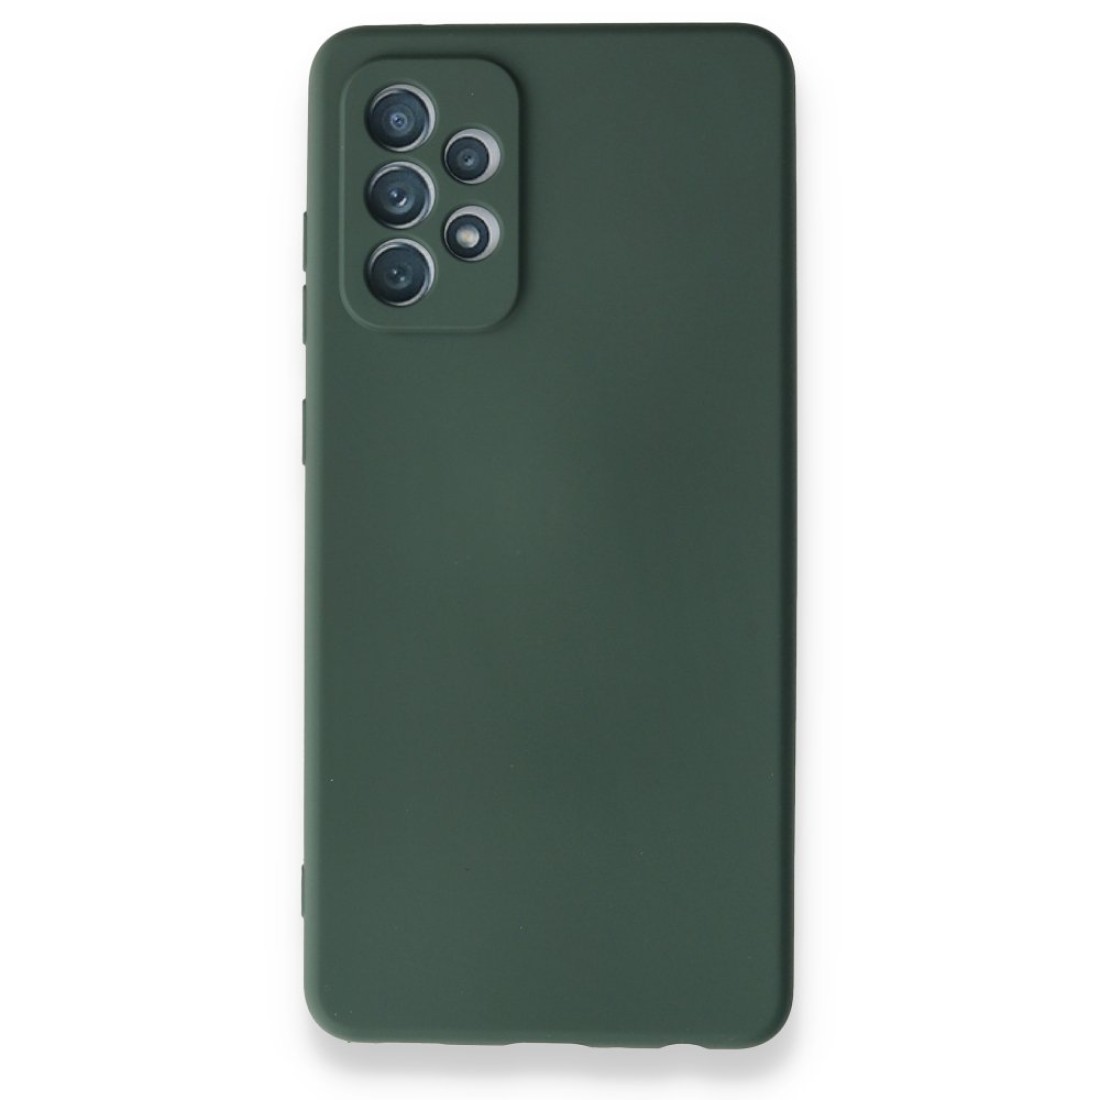 Samsung Galaxy A72 Kılıf Nano içi Kadife  Silikon - Koyu Yeşil